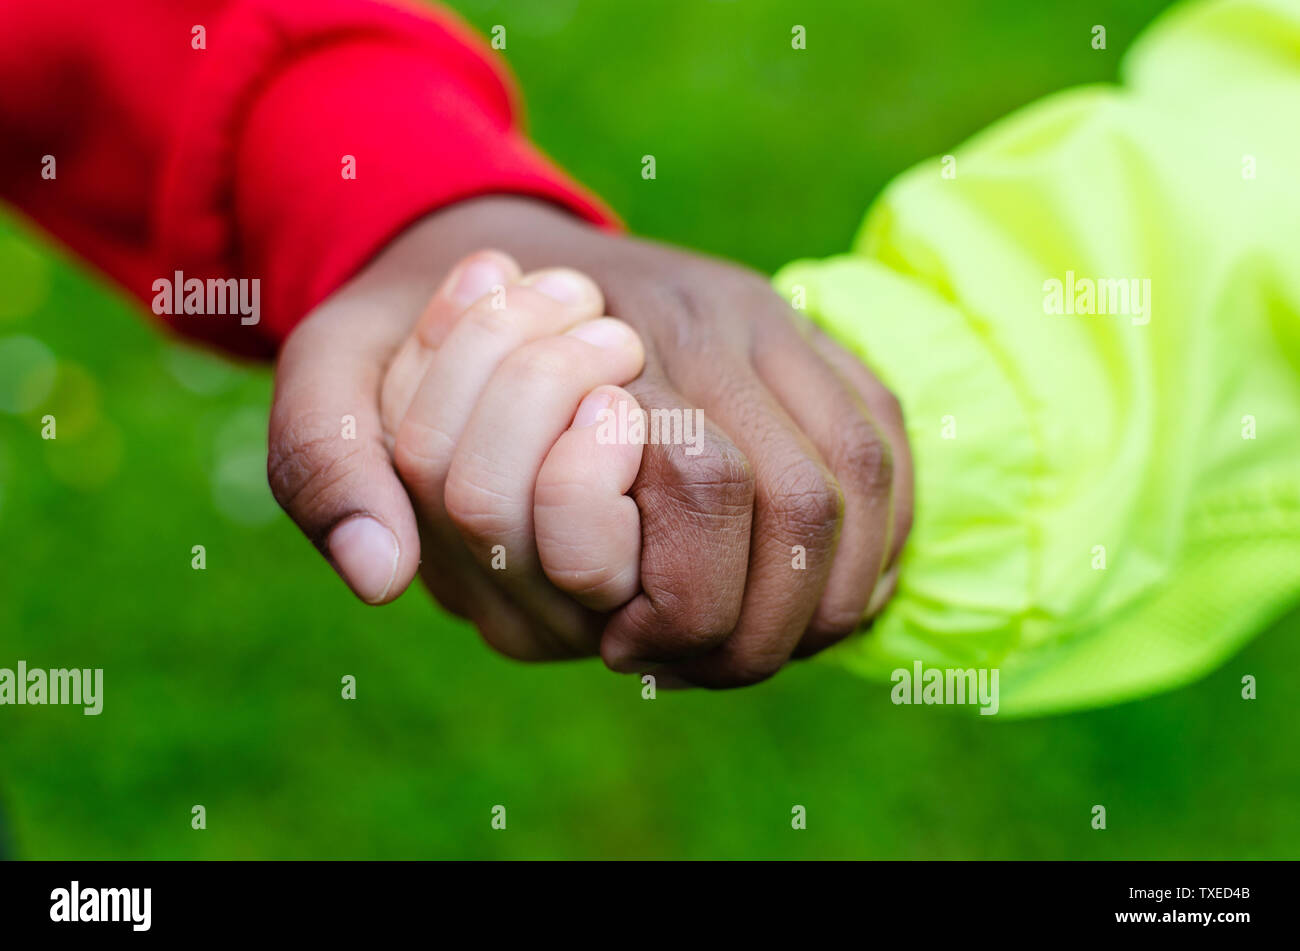 Deux enfants de races différentes tenant la main. La photo montre l'amitié, l'égalité et la diversité. Un portrait de l'autre est sombre (noir). Banque D'Images